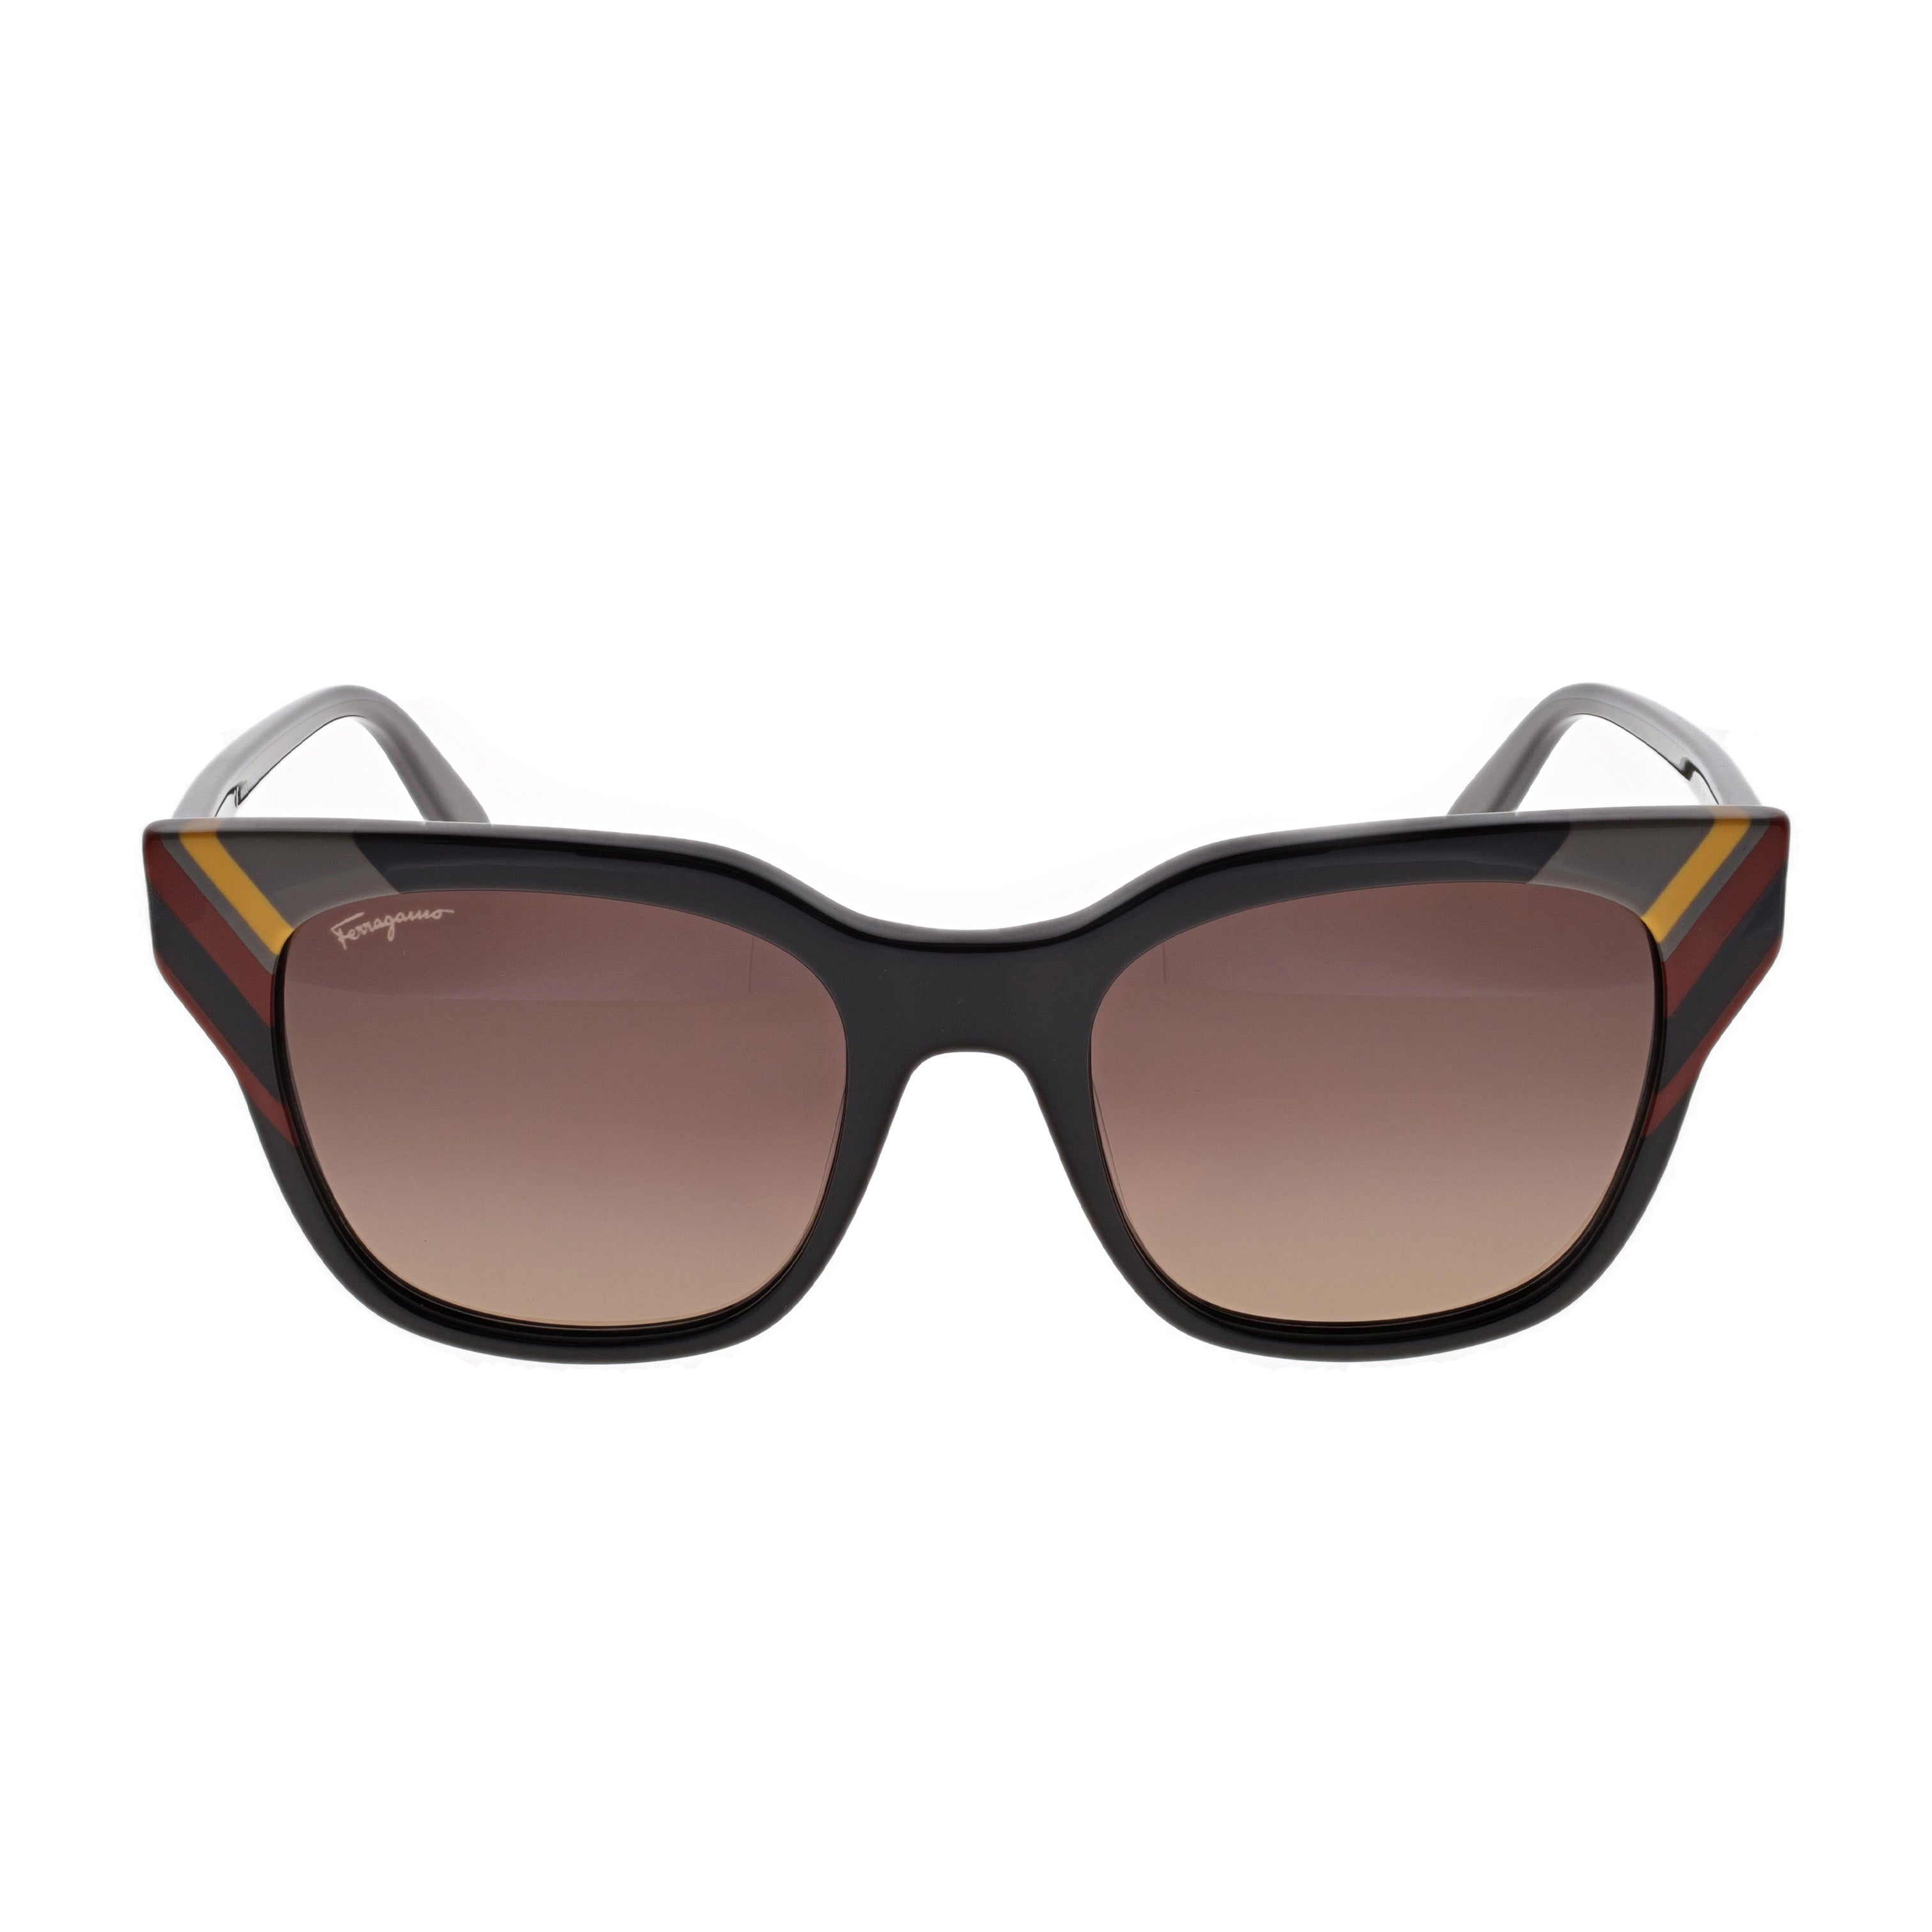 Salvatore Ferragamo Sunglasses - SF875S - Dark Brown